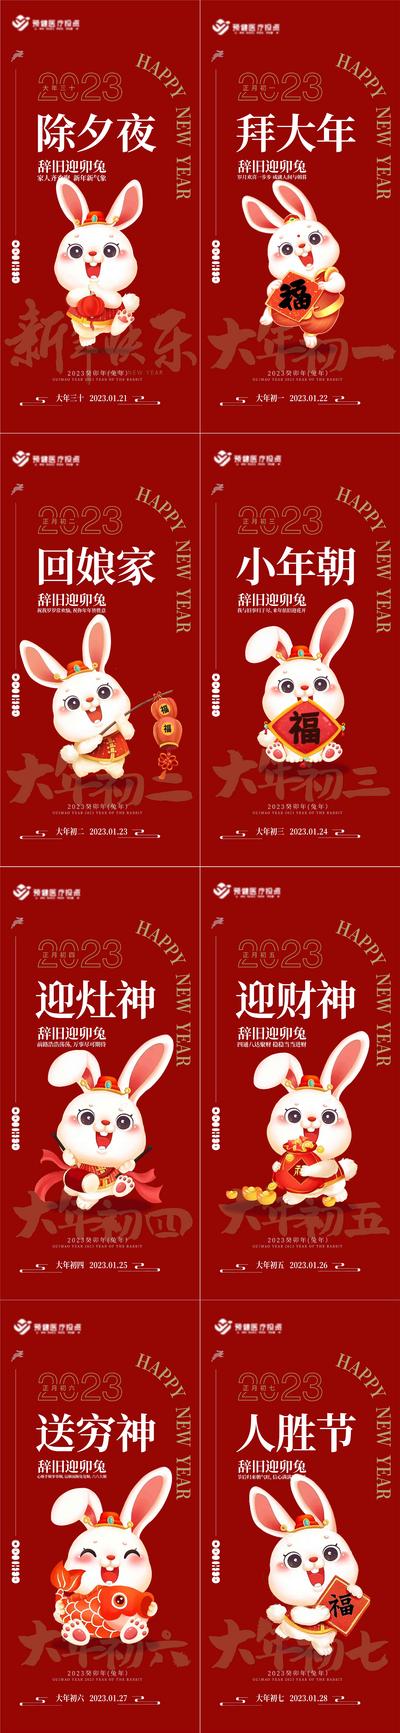 南门网 海报 中国传统节日 春节 插画 年俗 初一初七 拜年 兔子 兔年